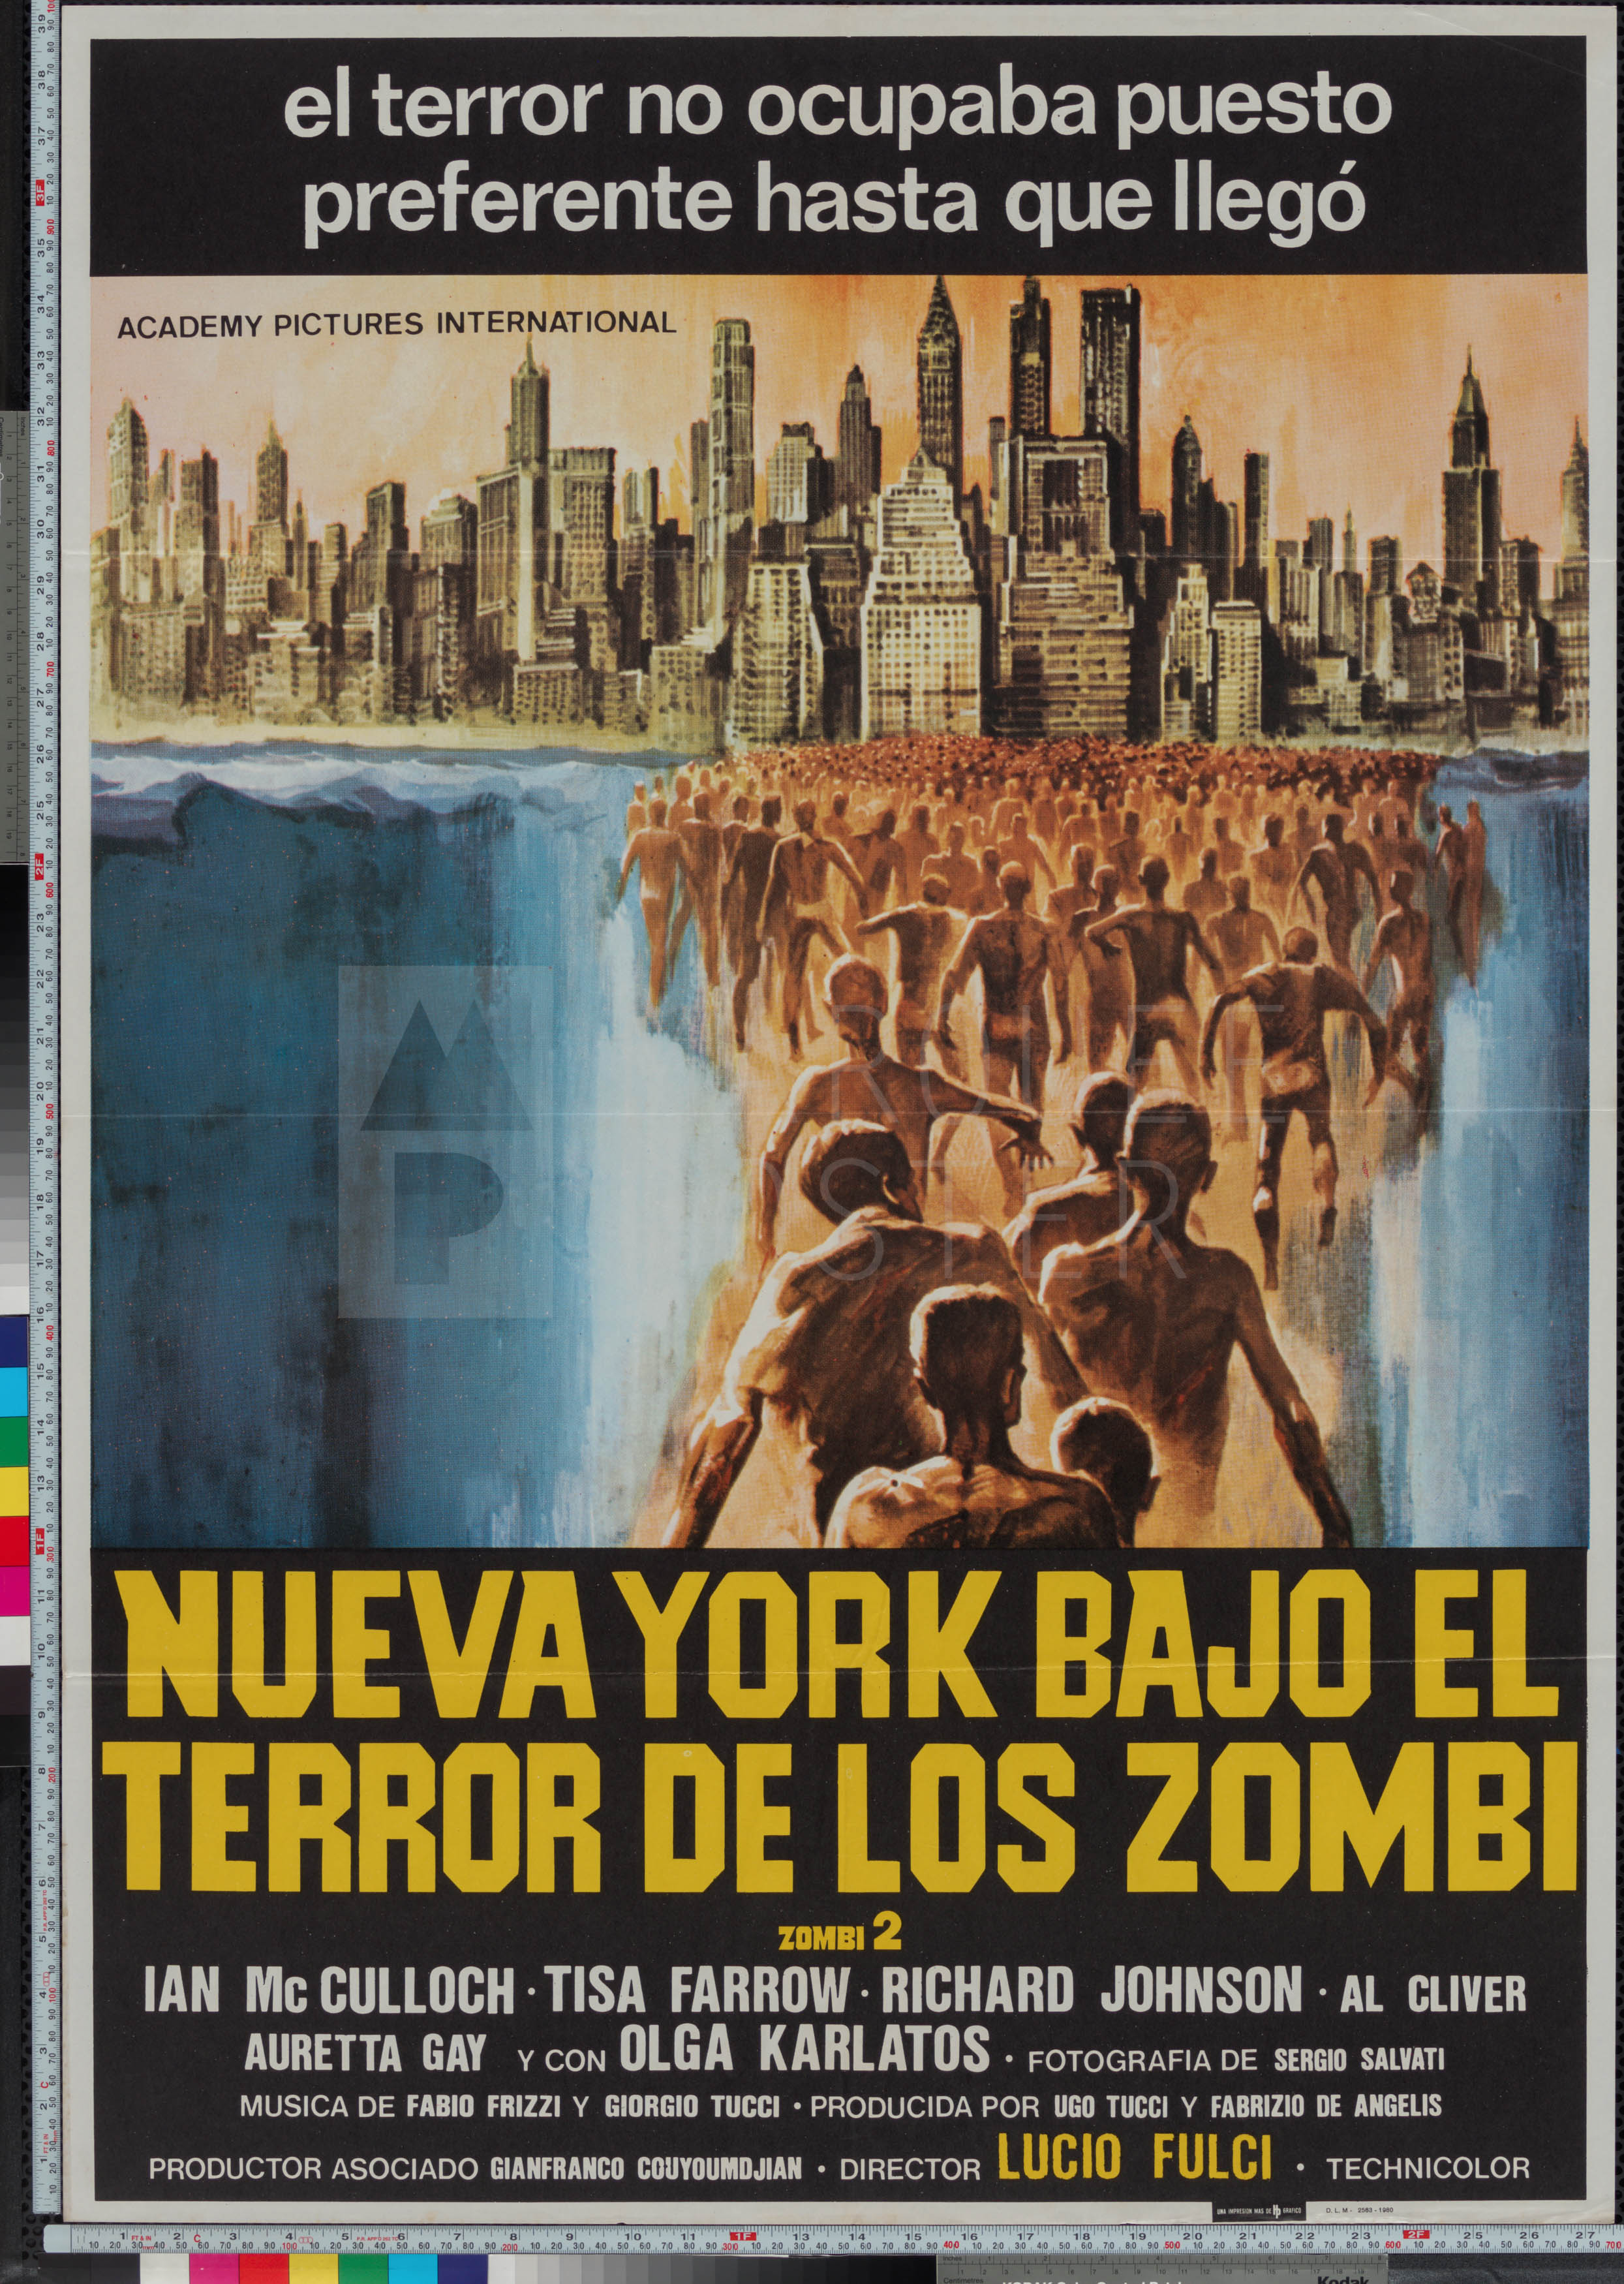 36-zombie-spanish-1-sheet-1980-02